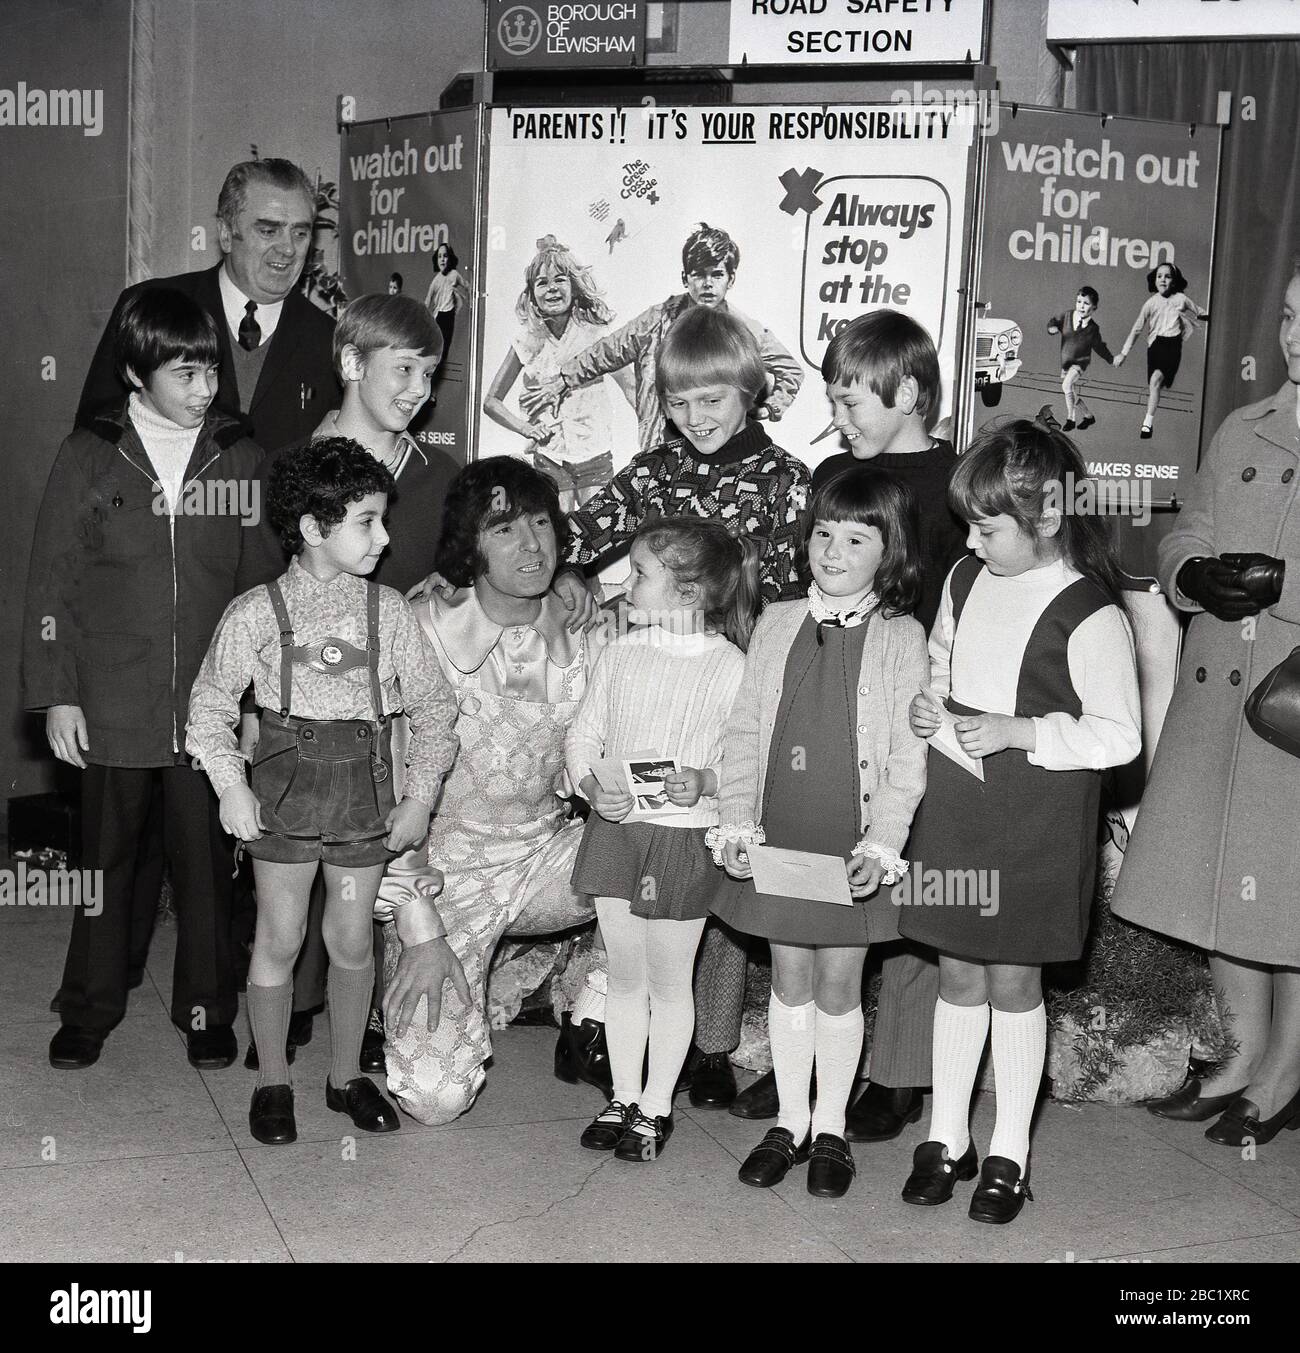 Der britische Comedian und Entertainer der Kinder, Ken Goodwin, mit einer Gruppe von Schulmädchen und Jungen vor Werbeplakaten für die Verkehrssicherheit von Kindern und dem Green Cross Code im Borough of Lewisham, South East London, England, Großbritannien. Stockfoto